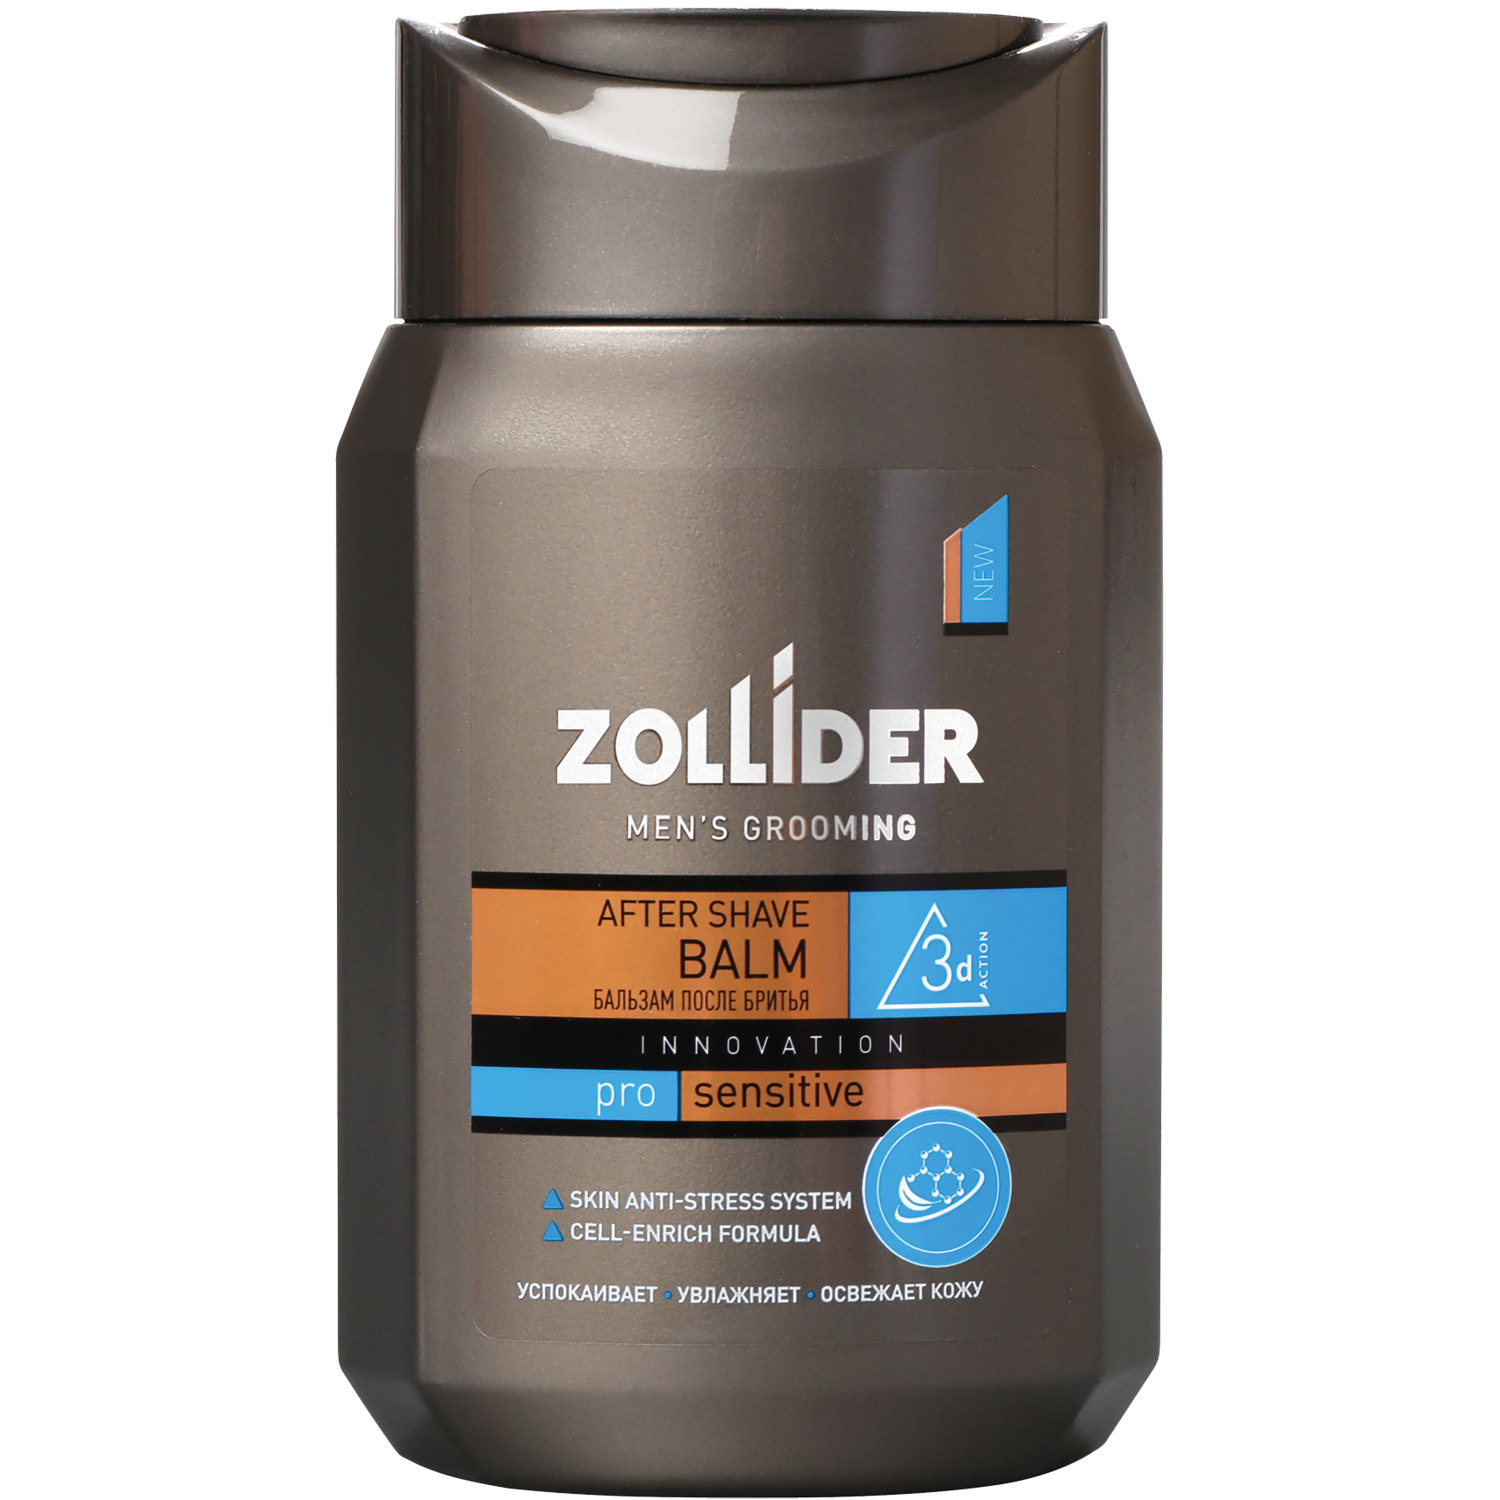 Бальзам после бритья Zollider Pro Sensitive для чувствительной кожи 150 мл бальзам после бритья успокаивающий для чувствительной кожи 75 г